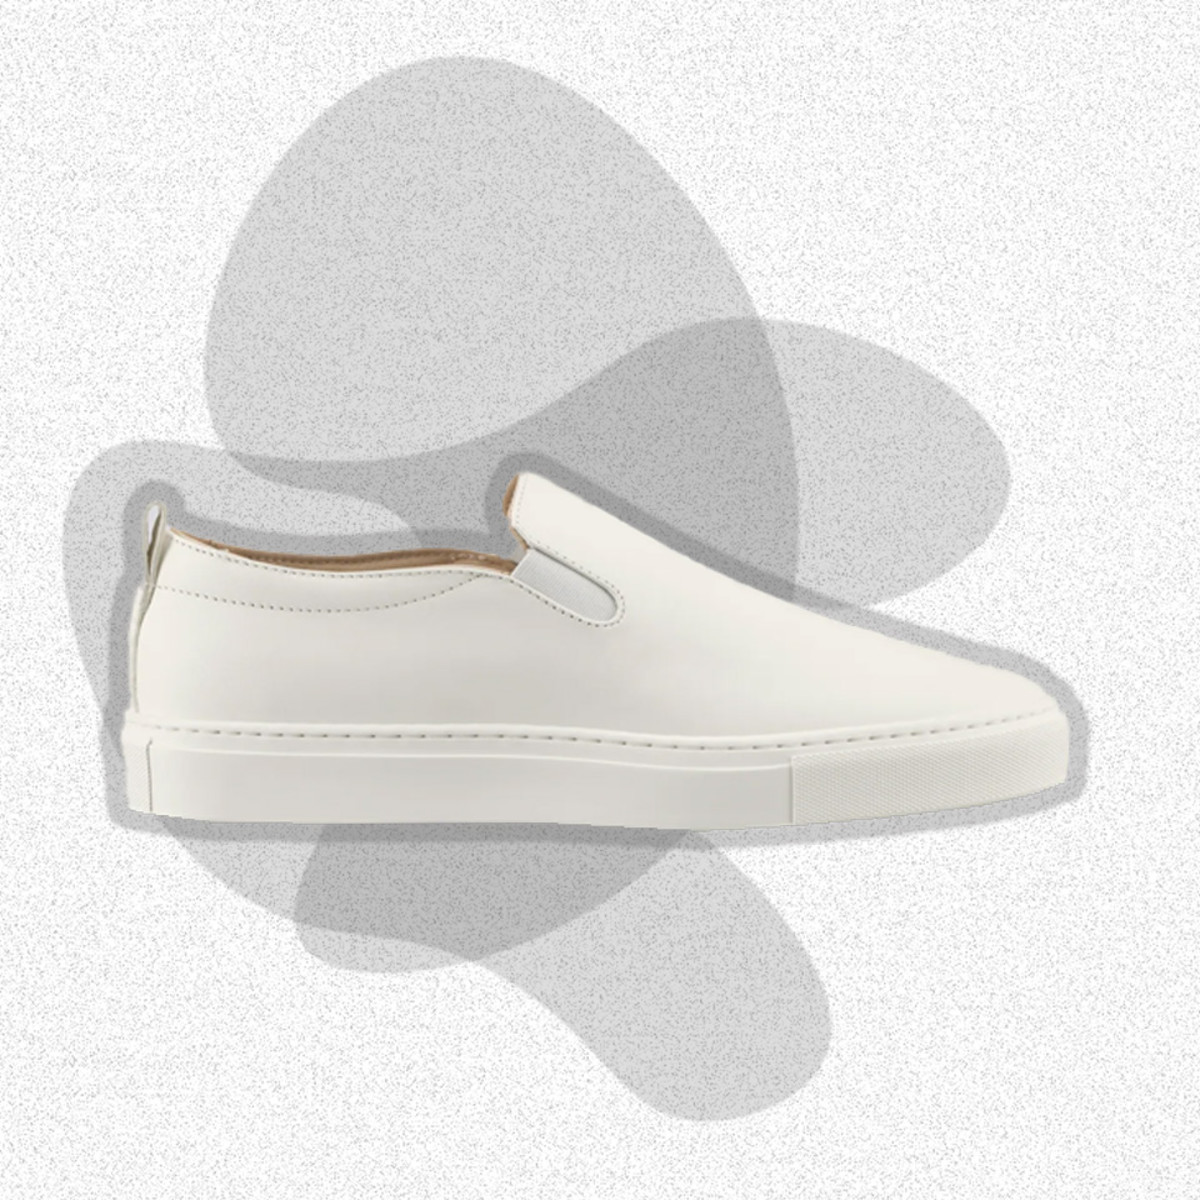 Neeman's Slip On Sneakers For Men - Buy Neeman's Slip On Sneakers For Men  Online at Best Price - Shop Online for Footwears in India | Flipkart.com